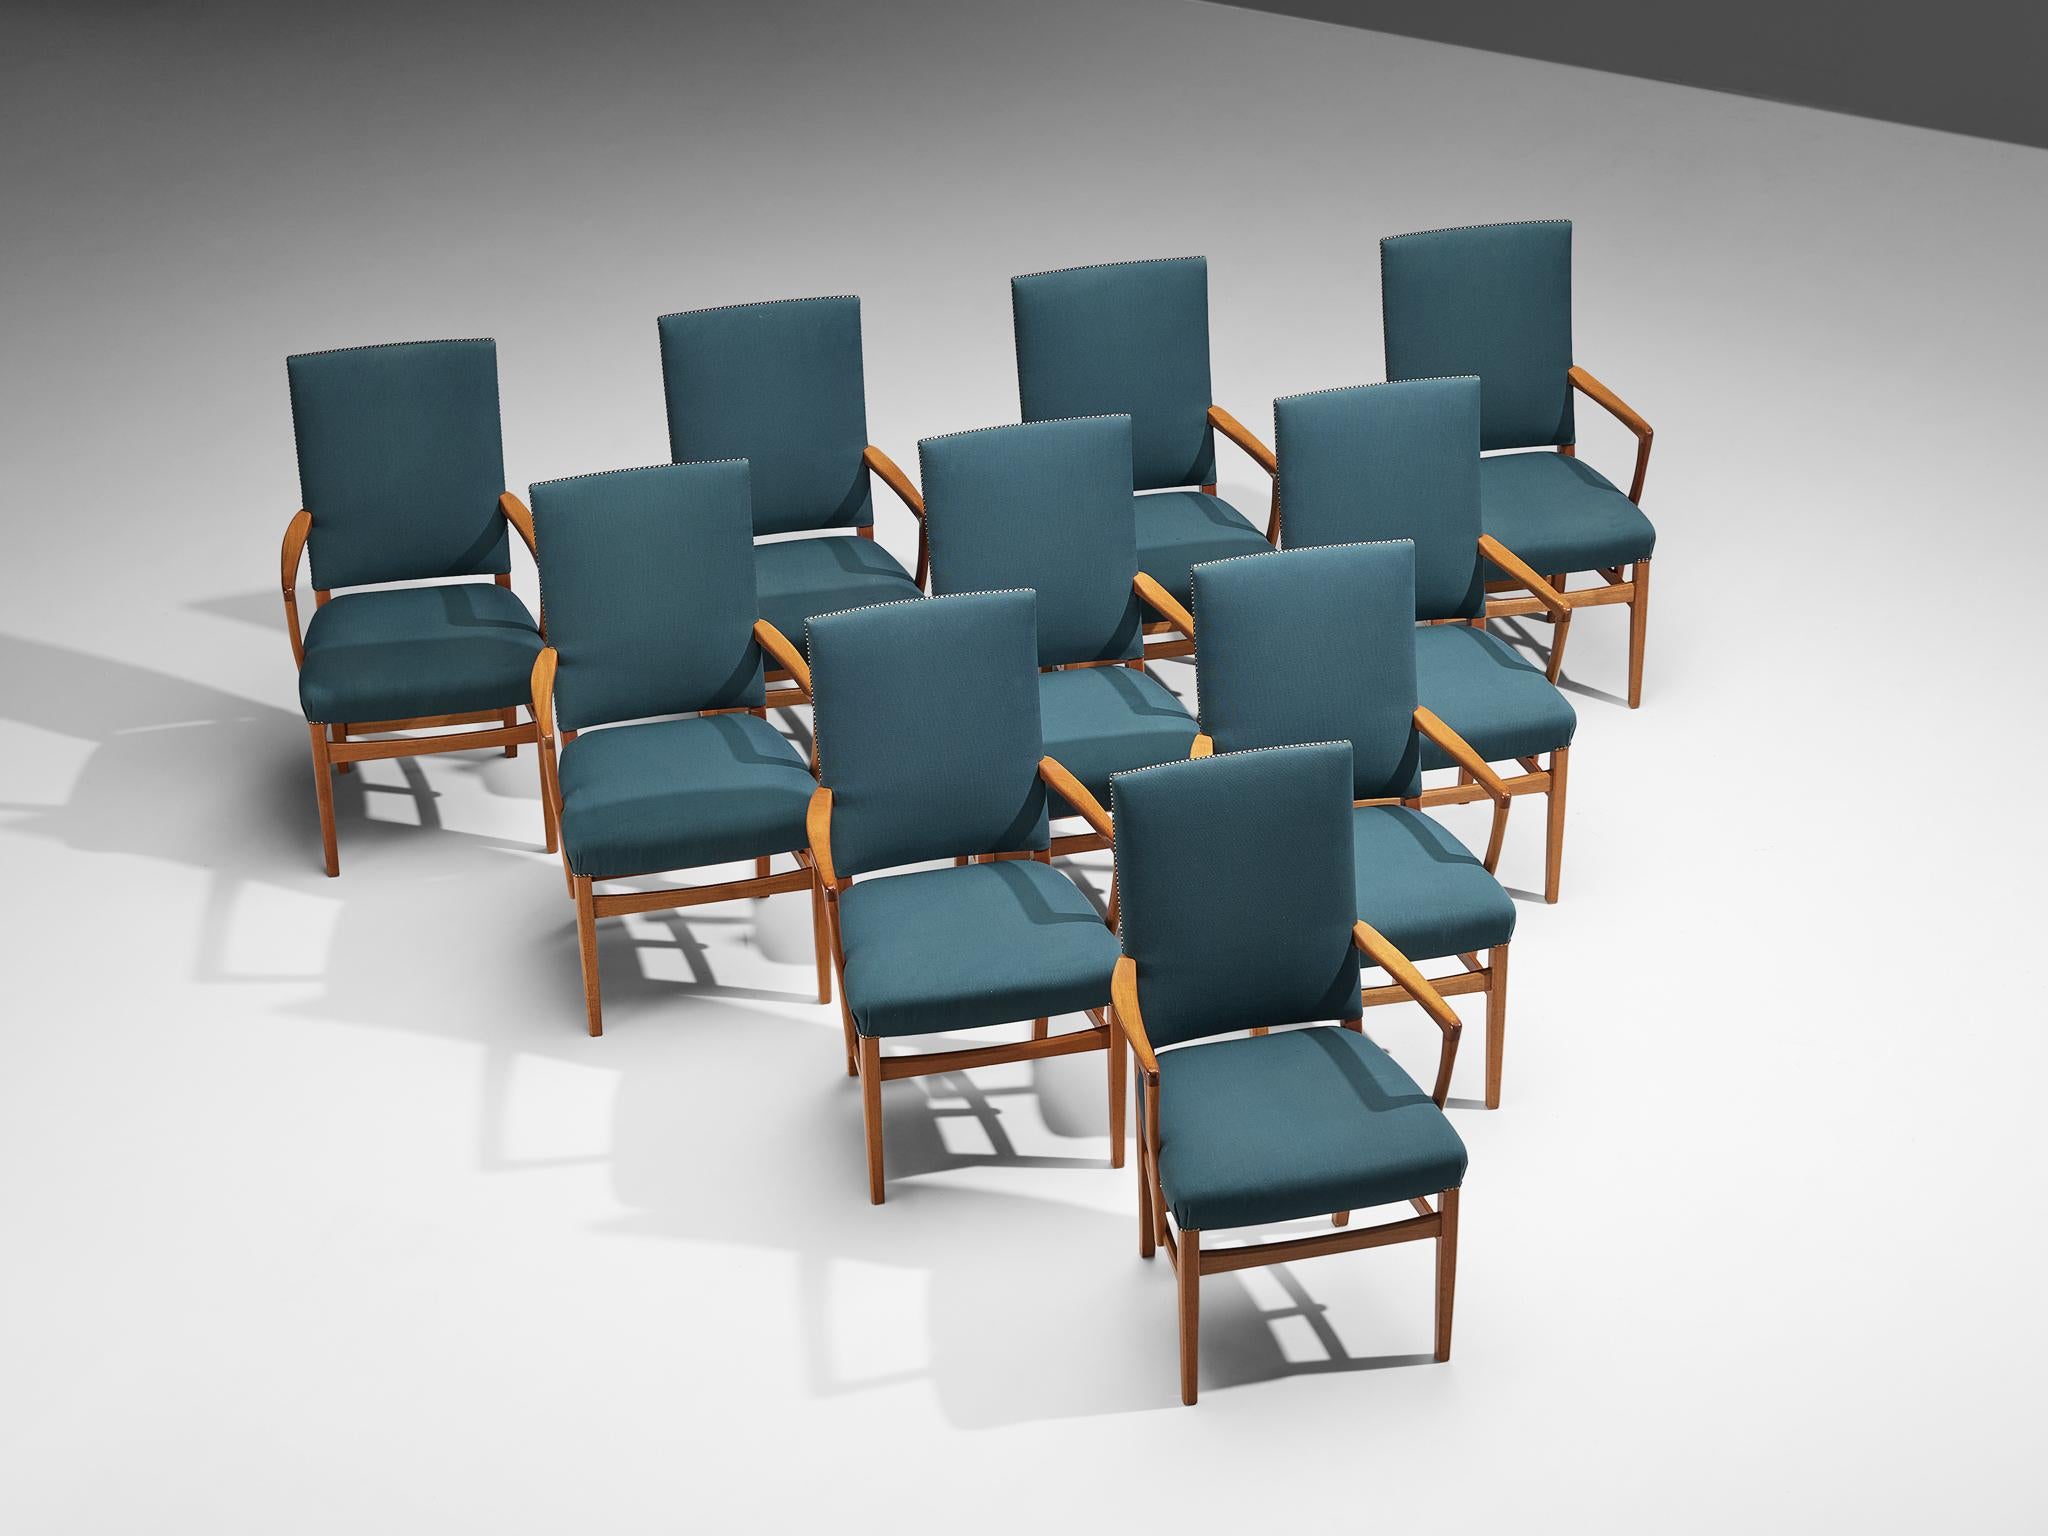 Carl Malmsten, ensemble de dix chaises de salle à manger, teck, tissu, laiton, Suède, vers 1970

Ces fauteuils à haut dossier sont conçus par le designer suédois Carl Malmsten (1888-1972). Ces élégants fauteuils sont un excellent exemple de